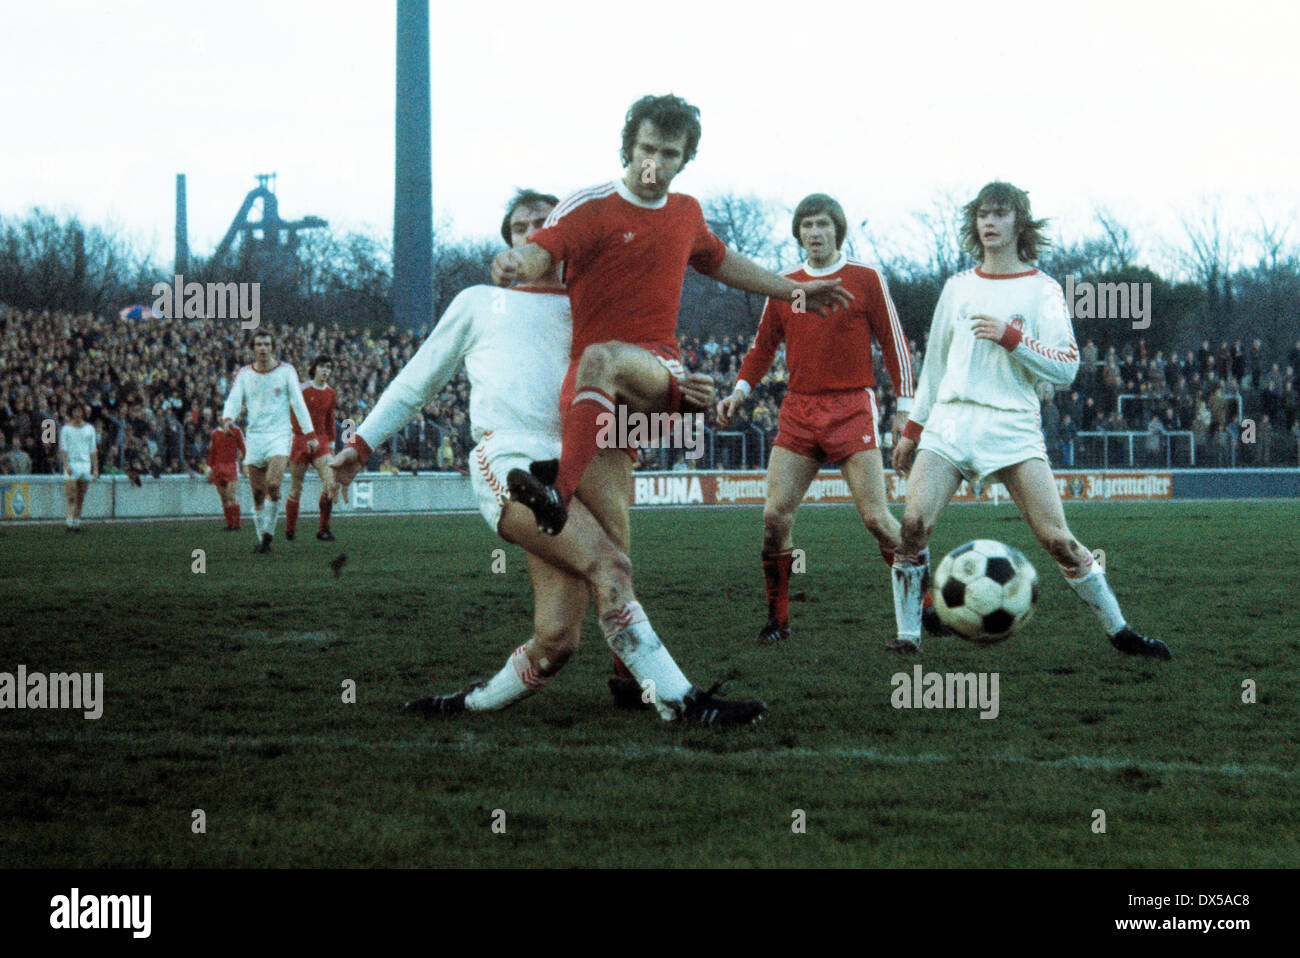 Calcio, 2. Bundesliga Nord, 1974/1975, Niederrheinstadion, Rot Weiss Oberhausen contro FC St Pauli Amburgo 0:0, scena del match, Walter Krause (RWO) 2.f.l. in lotta per la sfera, dietro Juergen Jaeger (RWO) 3.F.L. Foto Stock